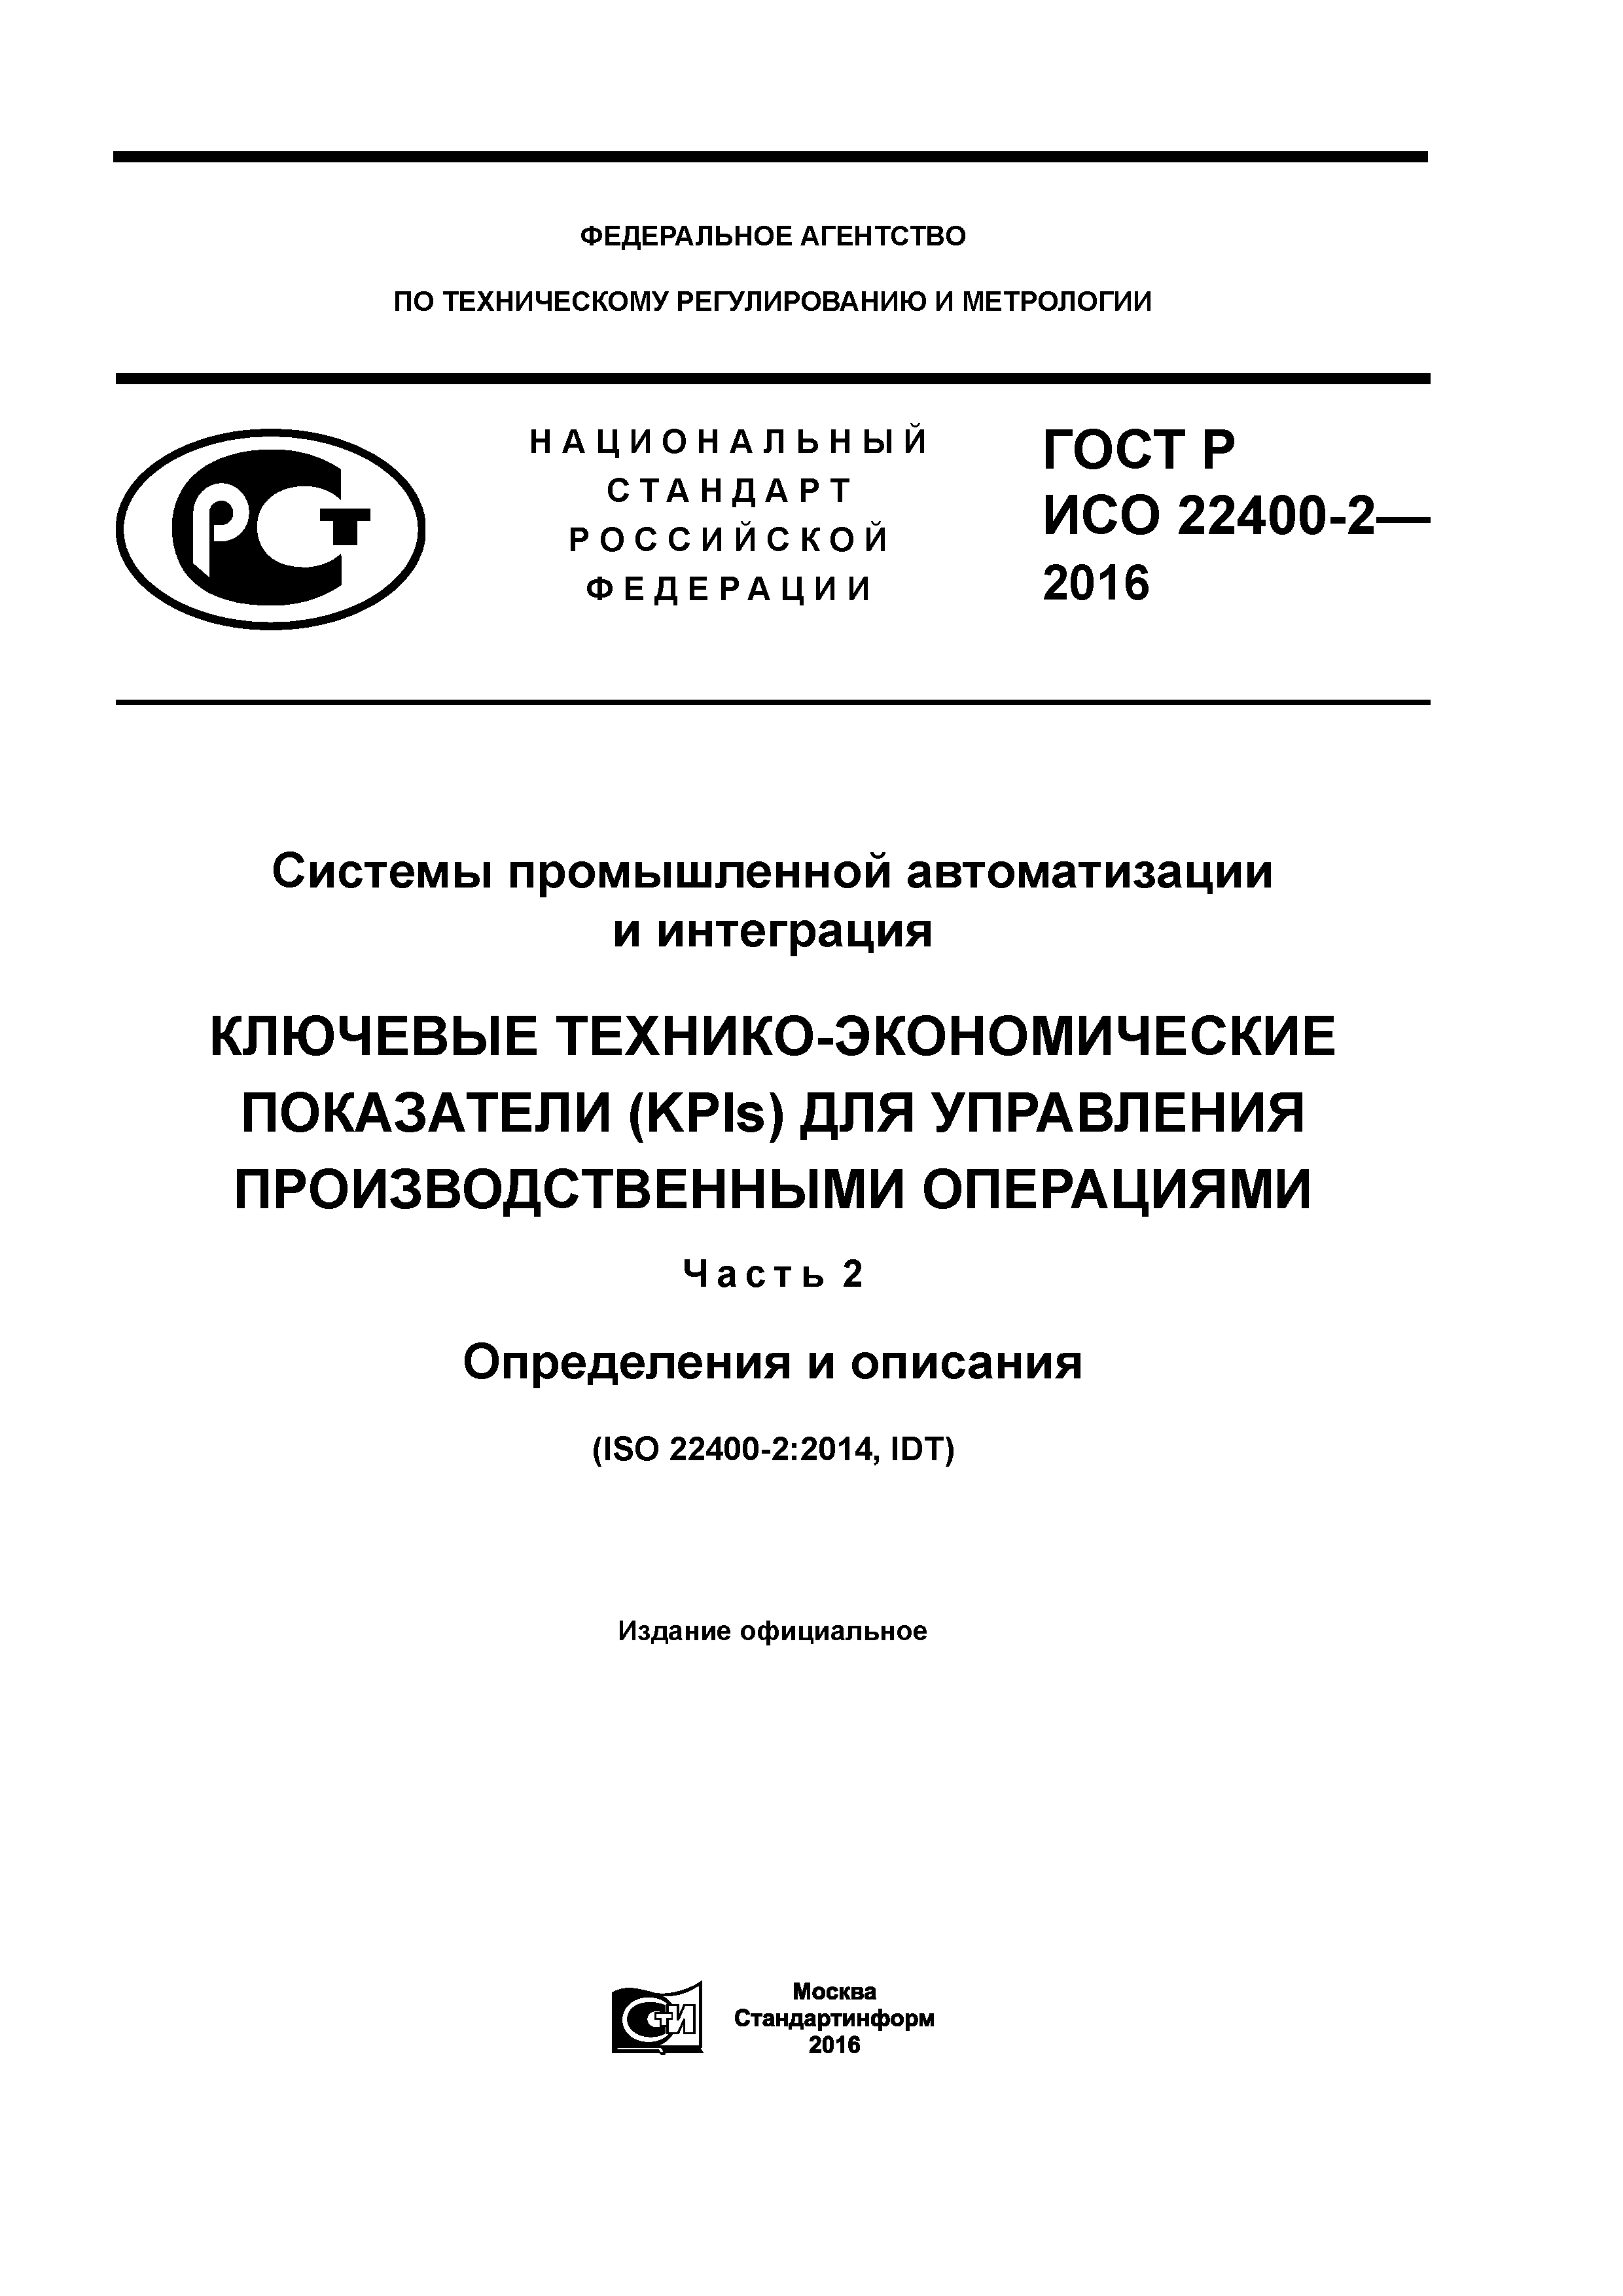 ГОСТ Р ИСО 22400-2-2016